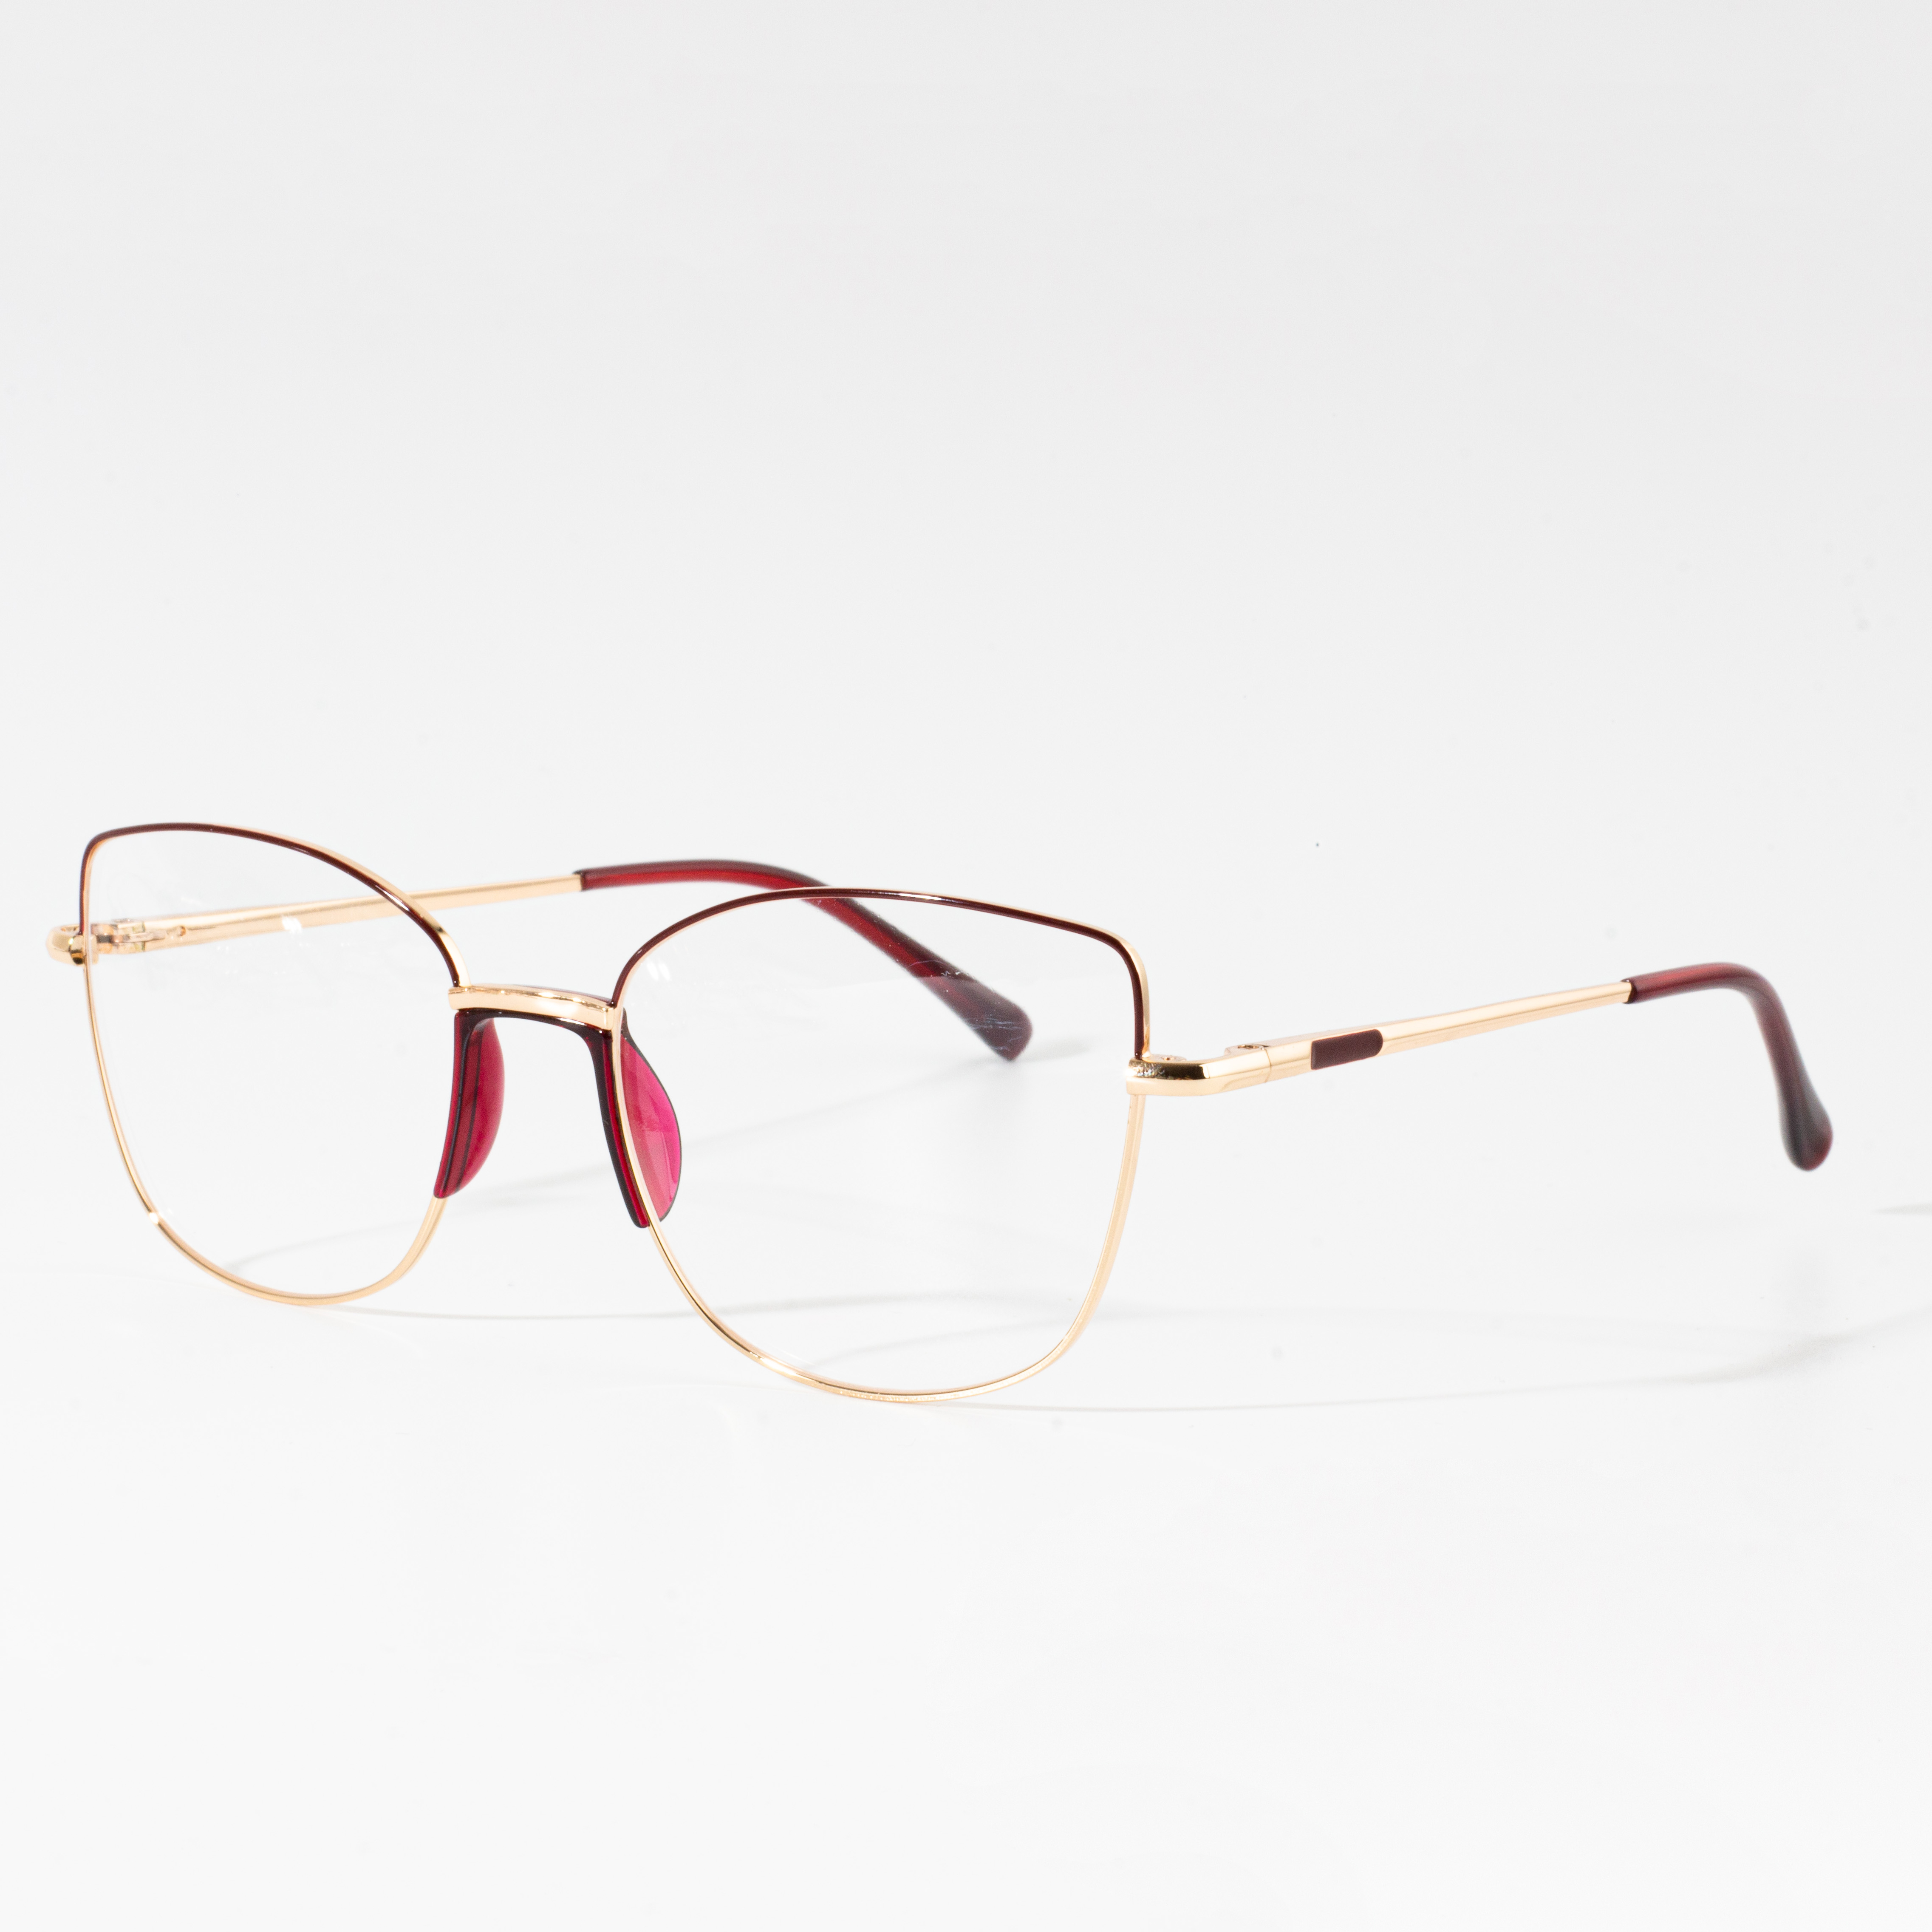 frames for eyeglasses